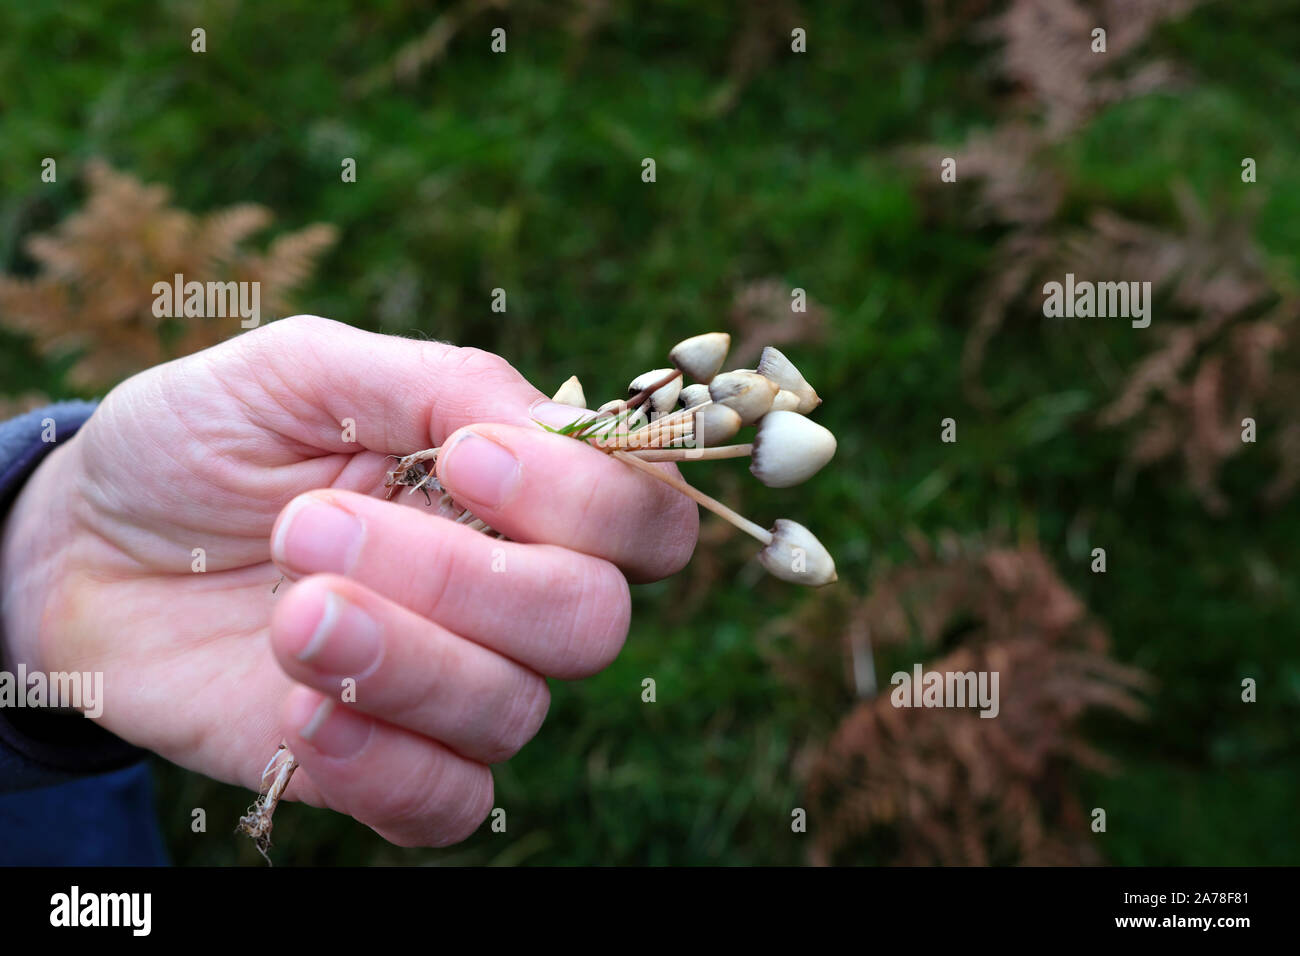 Main tenant des champignons psilocybine ont trouvé des champignons magiques à la recherche de champignons dans la campagne en automne dans le Carmarthenshire pays de Galles Royaume-Uni KATHY DEWITT Banque D'Images